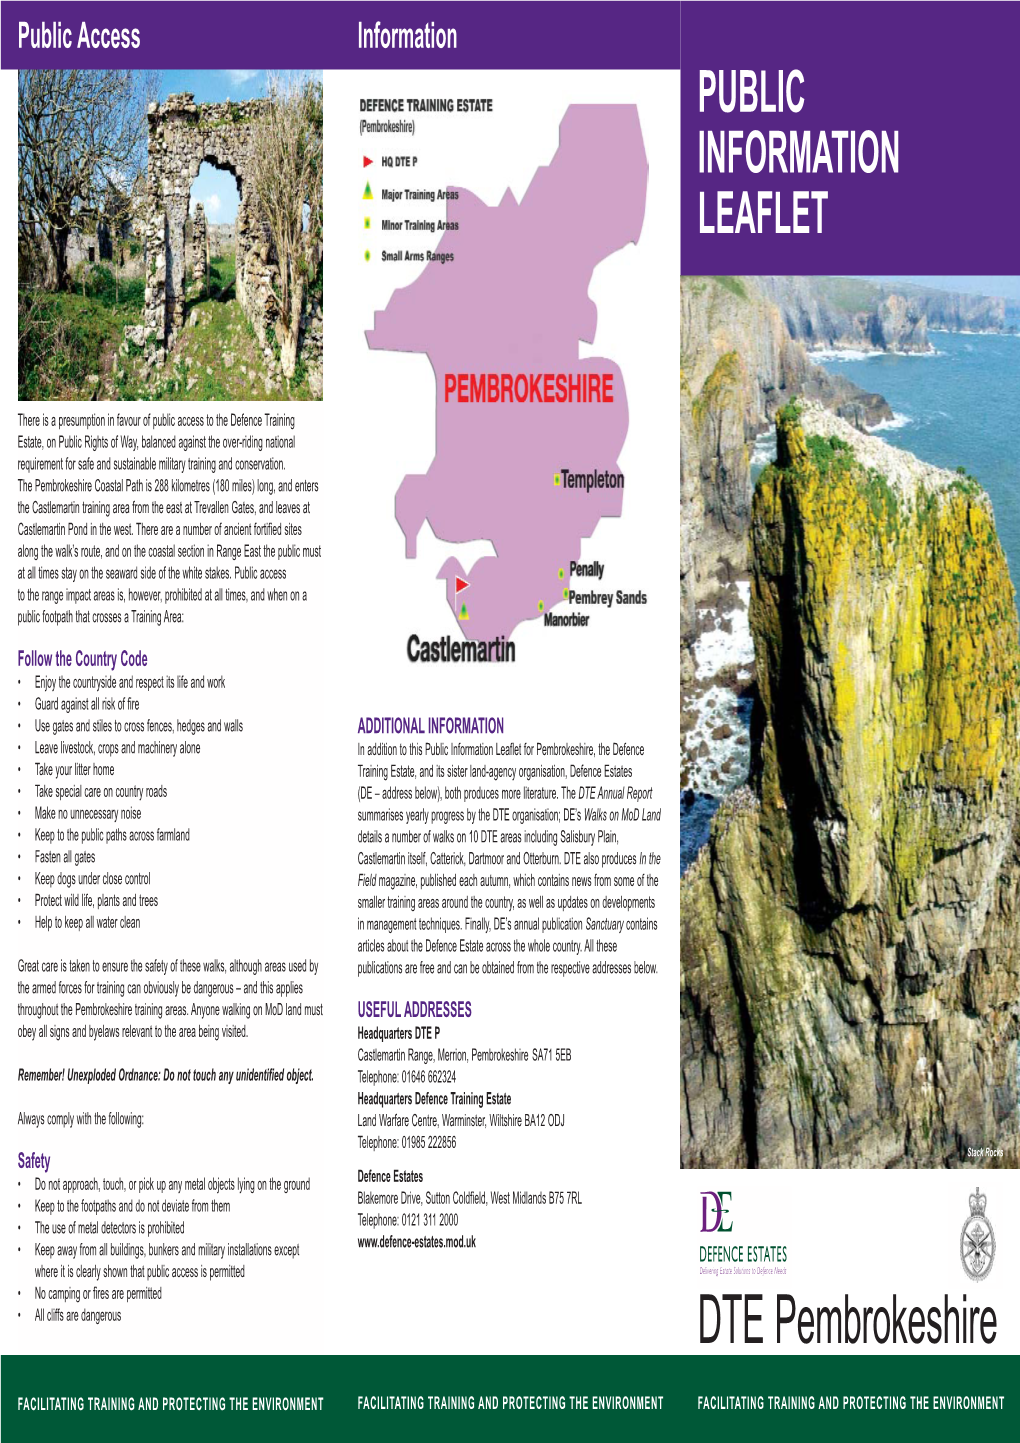 DTE Pembrokeshire Public Information Leaflet